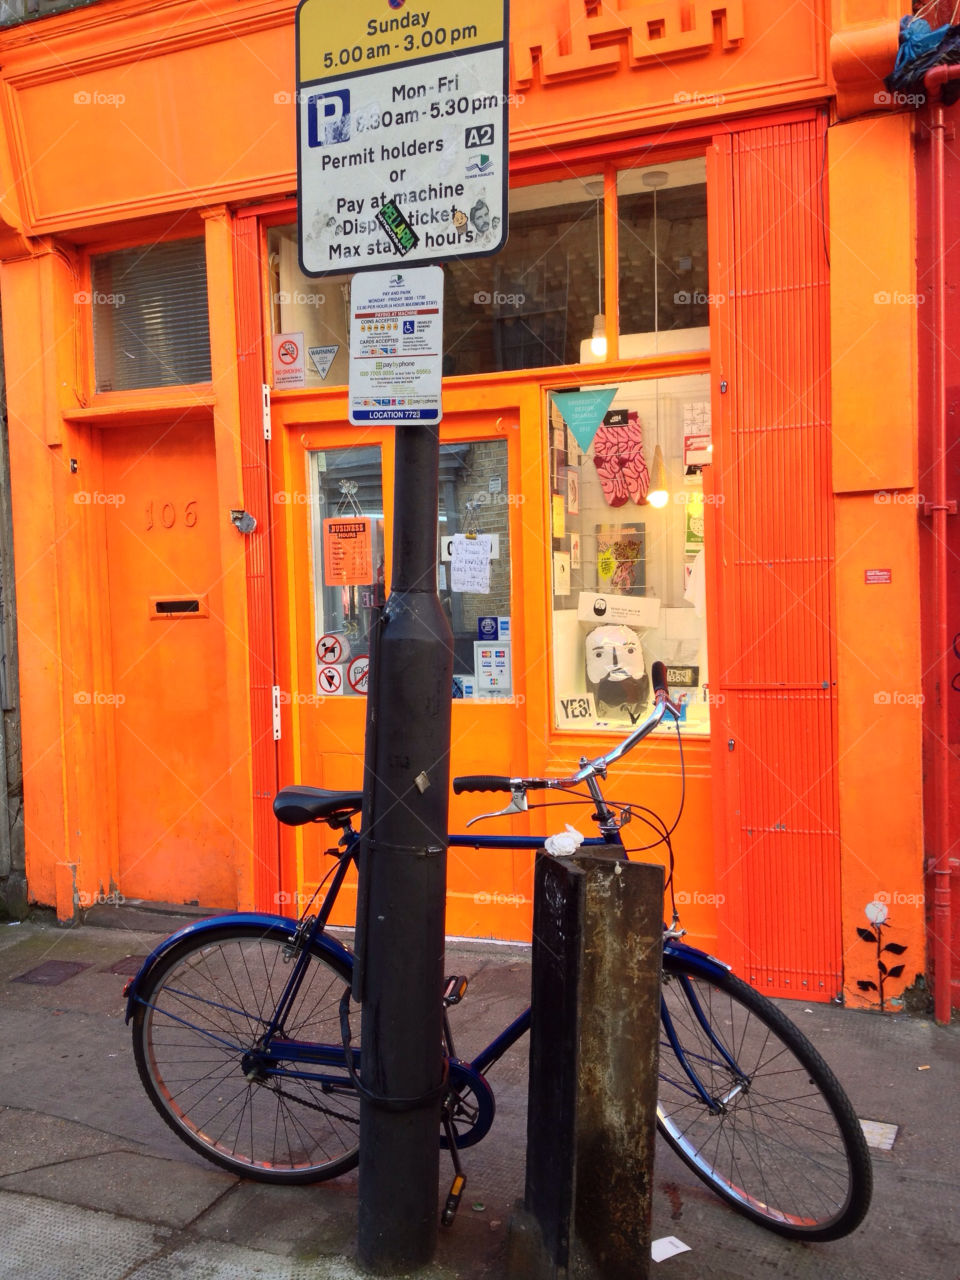 london market brick lane bike by alexchappel